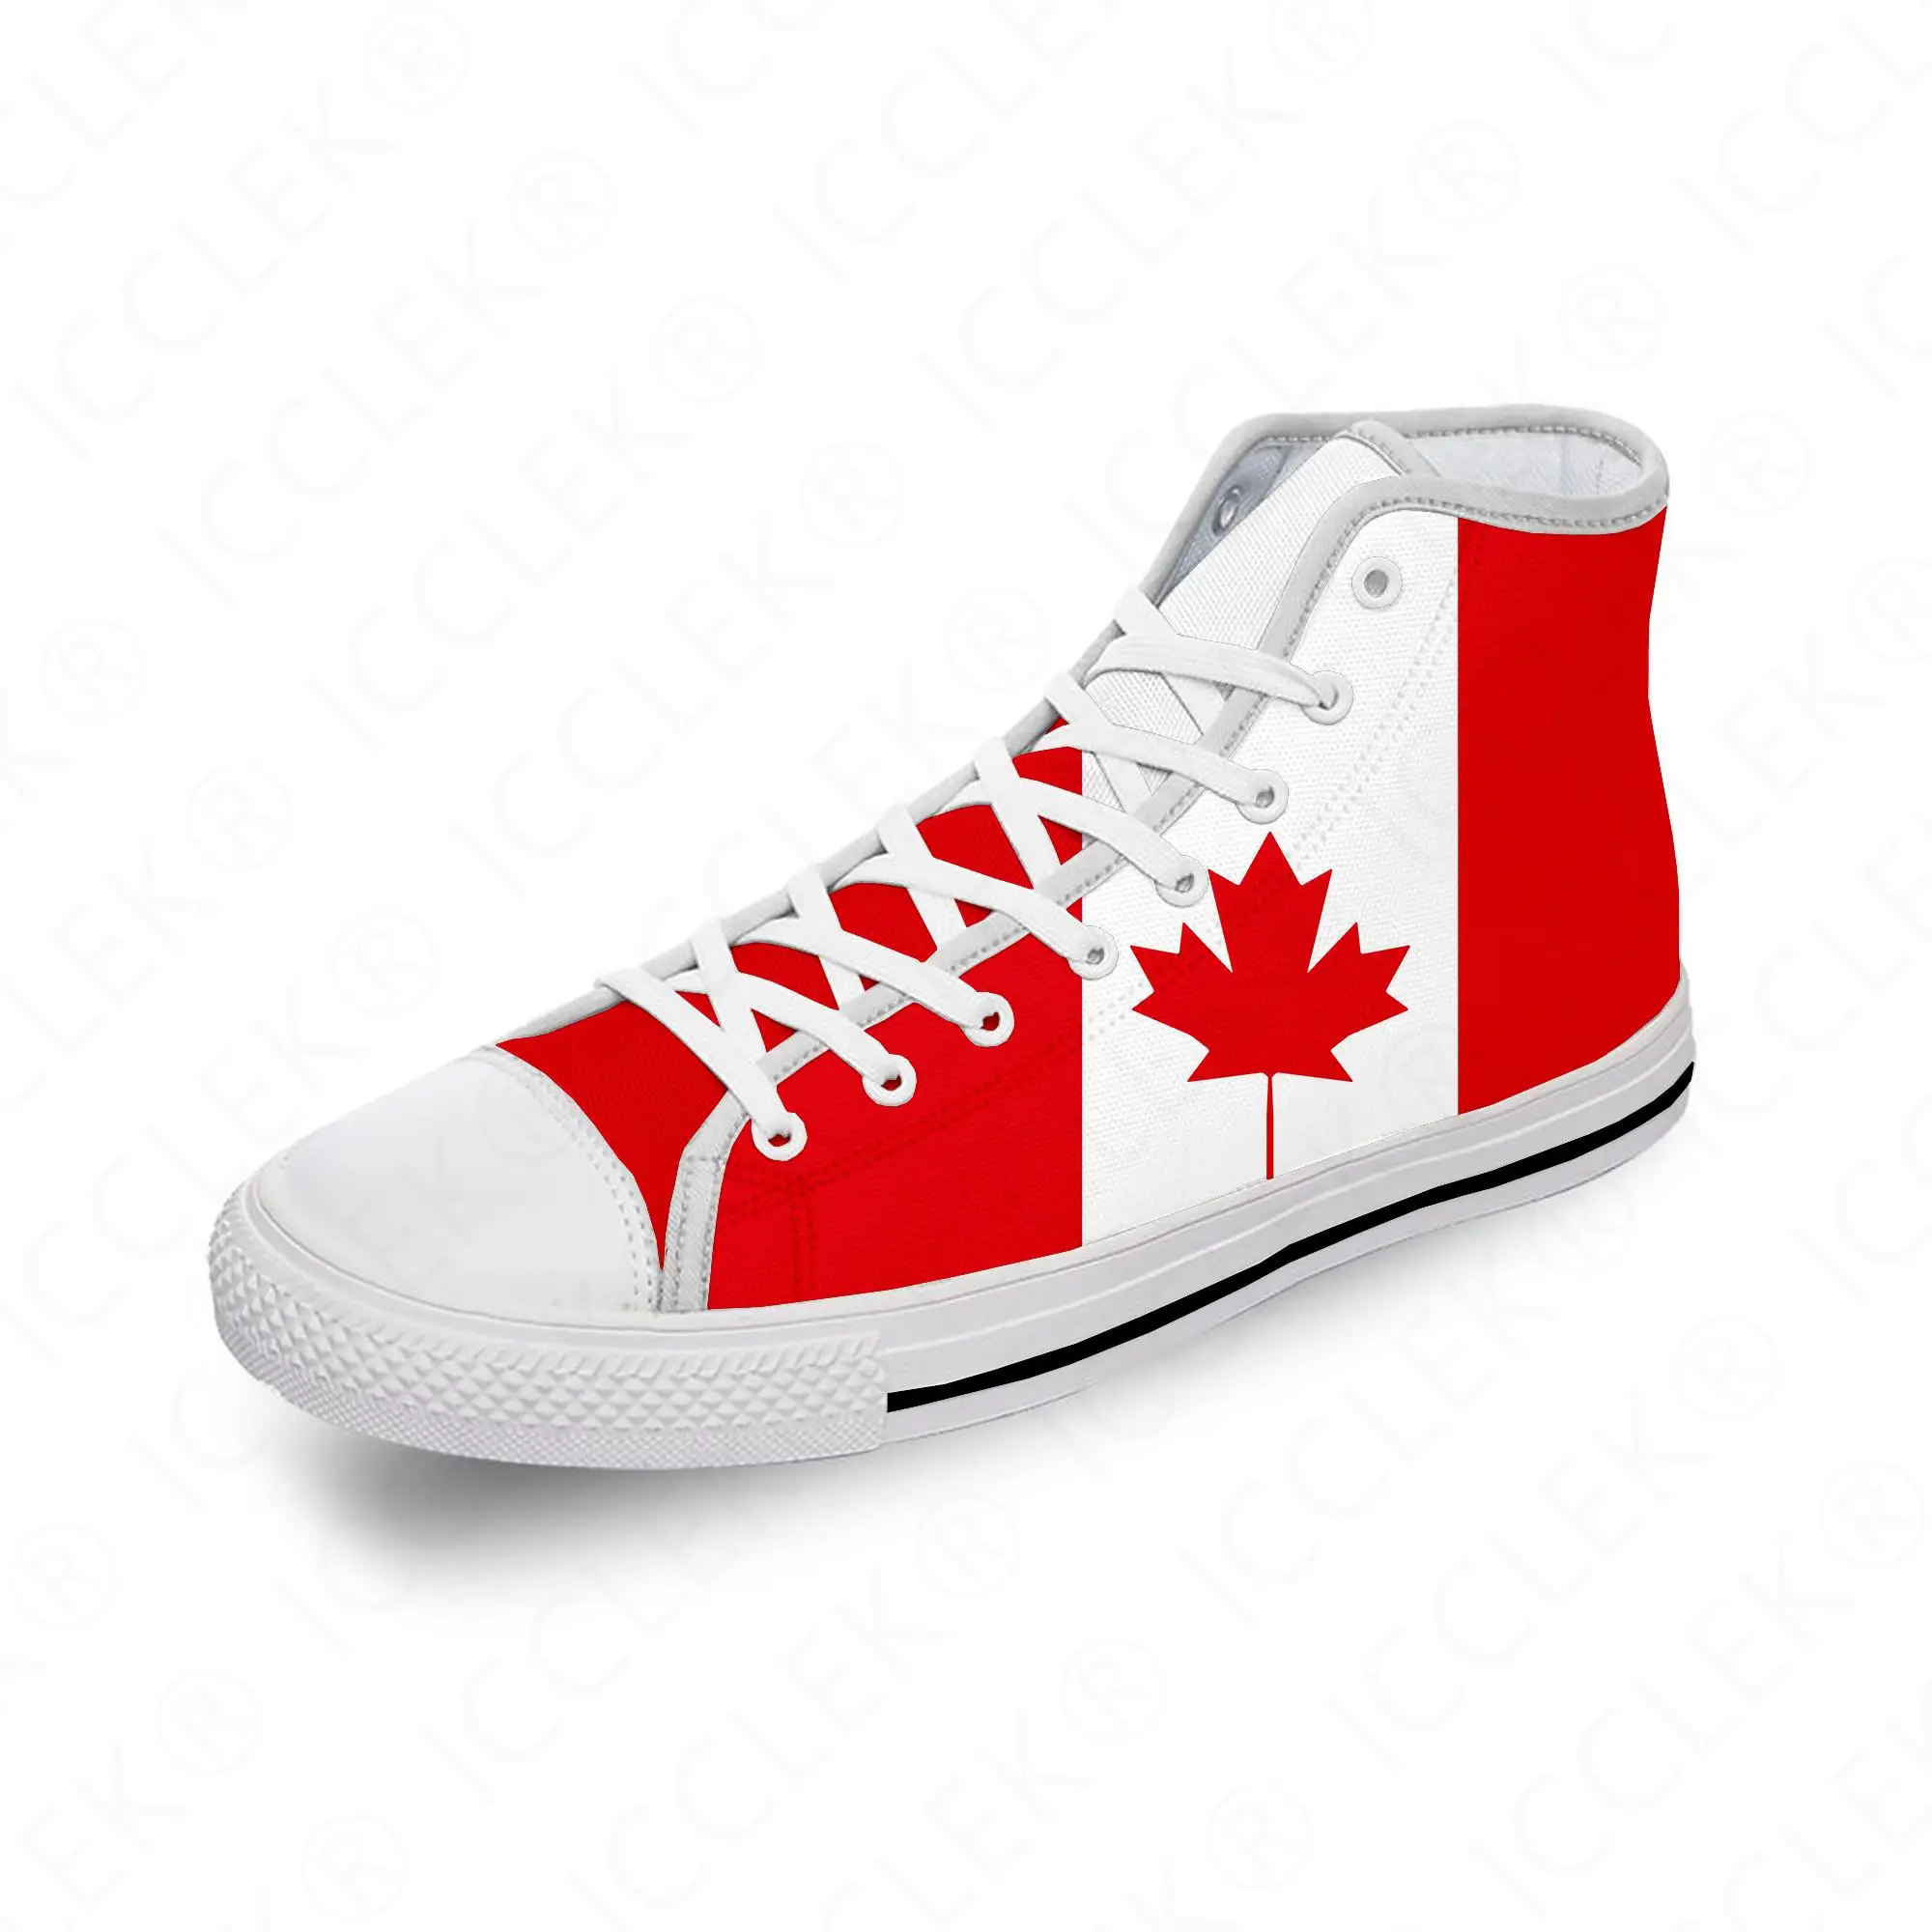 

Холщовые кроссовки для мужчин и женщин, легкие дышащие кеды с принтом флага Канады, Красного клена, забавная белая ткань, высокие берцы с 3D рисунком